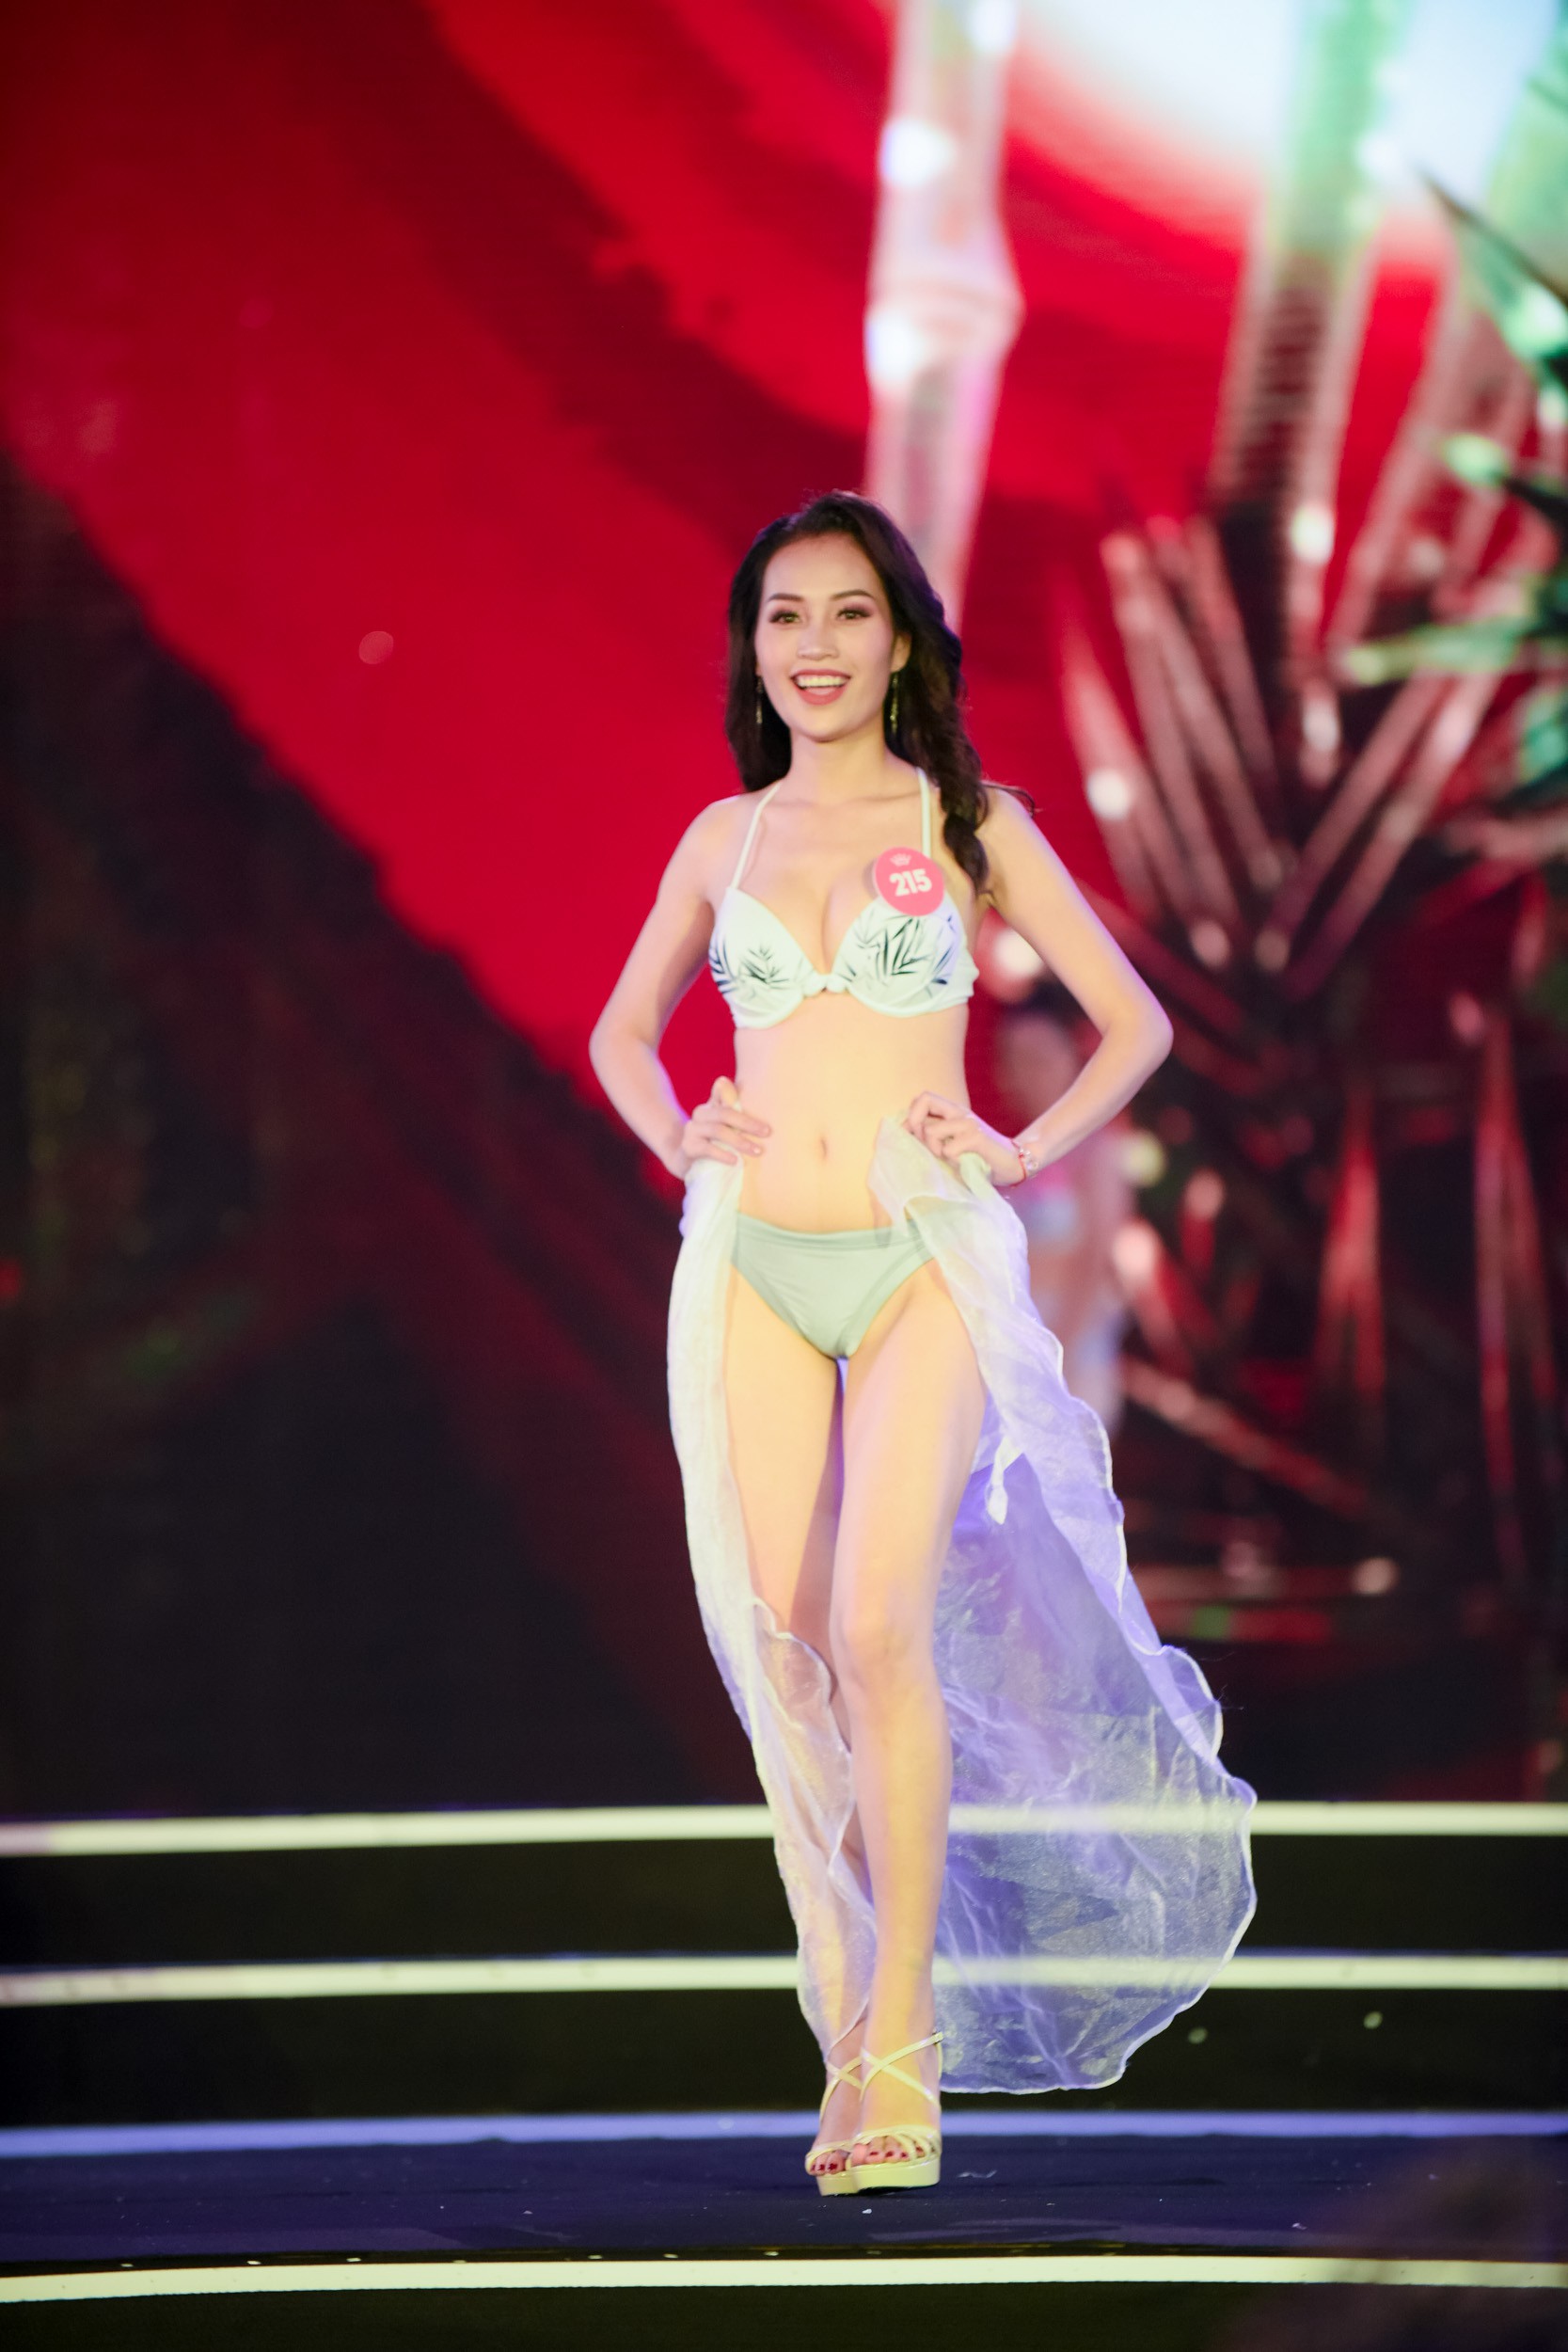 Vượt mưa bão, dàn người đẹp HHVN 2018 trình diễn bikini nóng bỏng mắt trong Chung khảo phía Bắc - Ảnh 11.